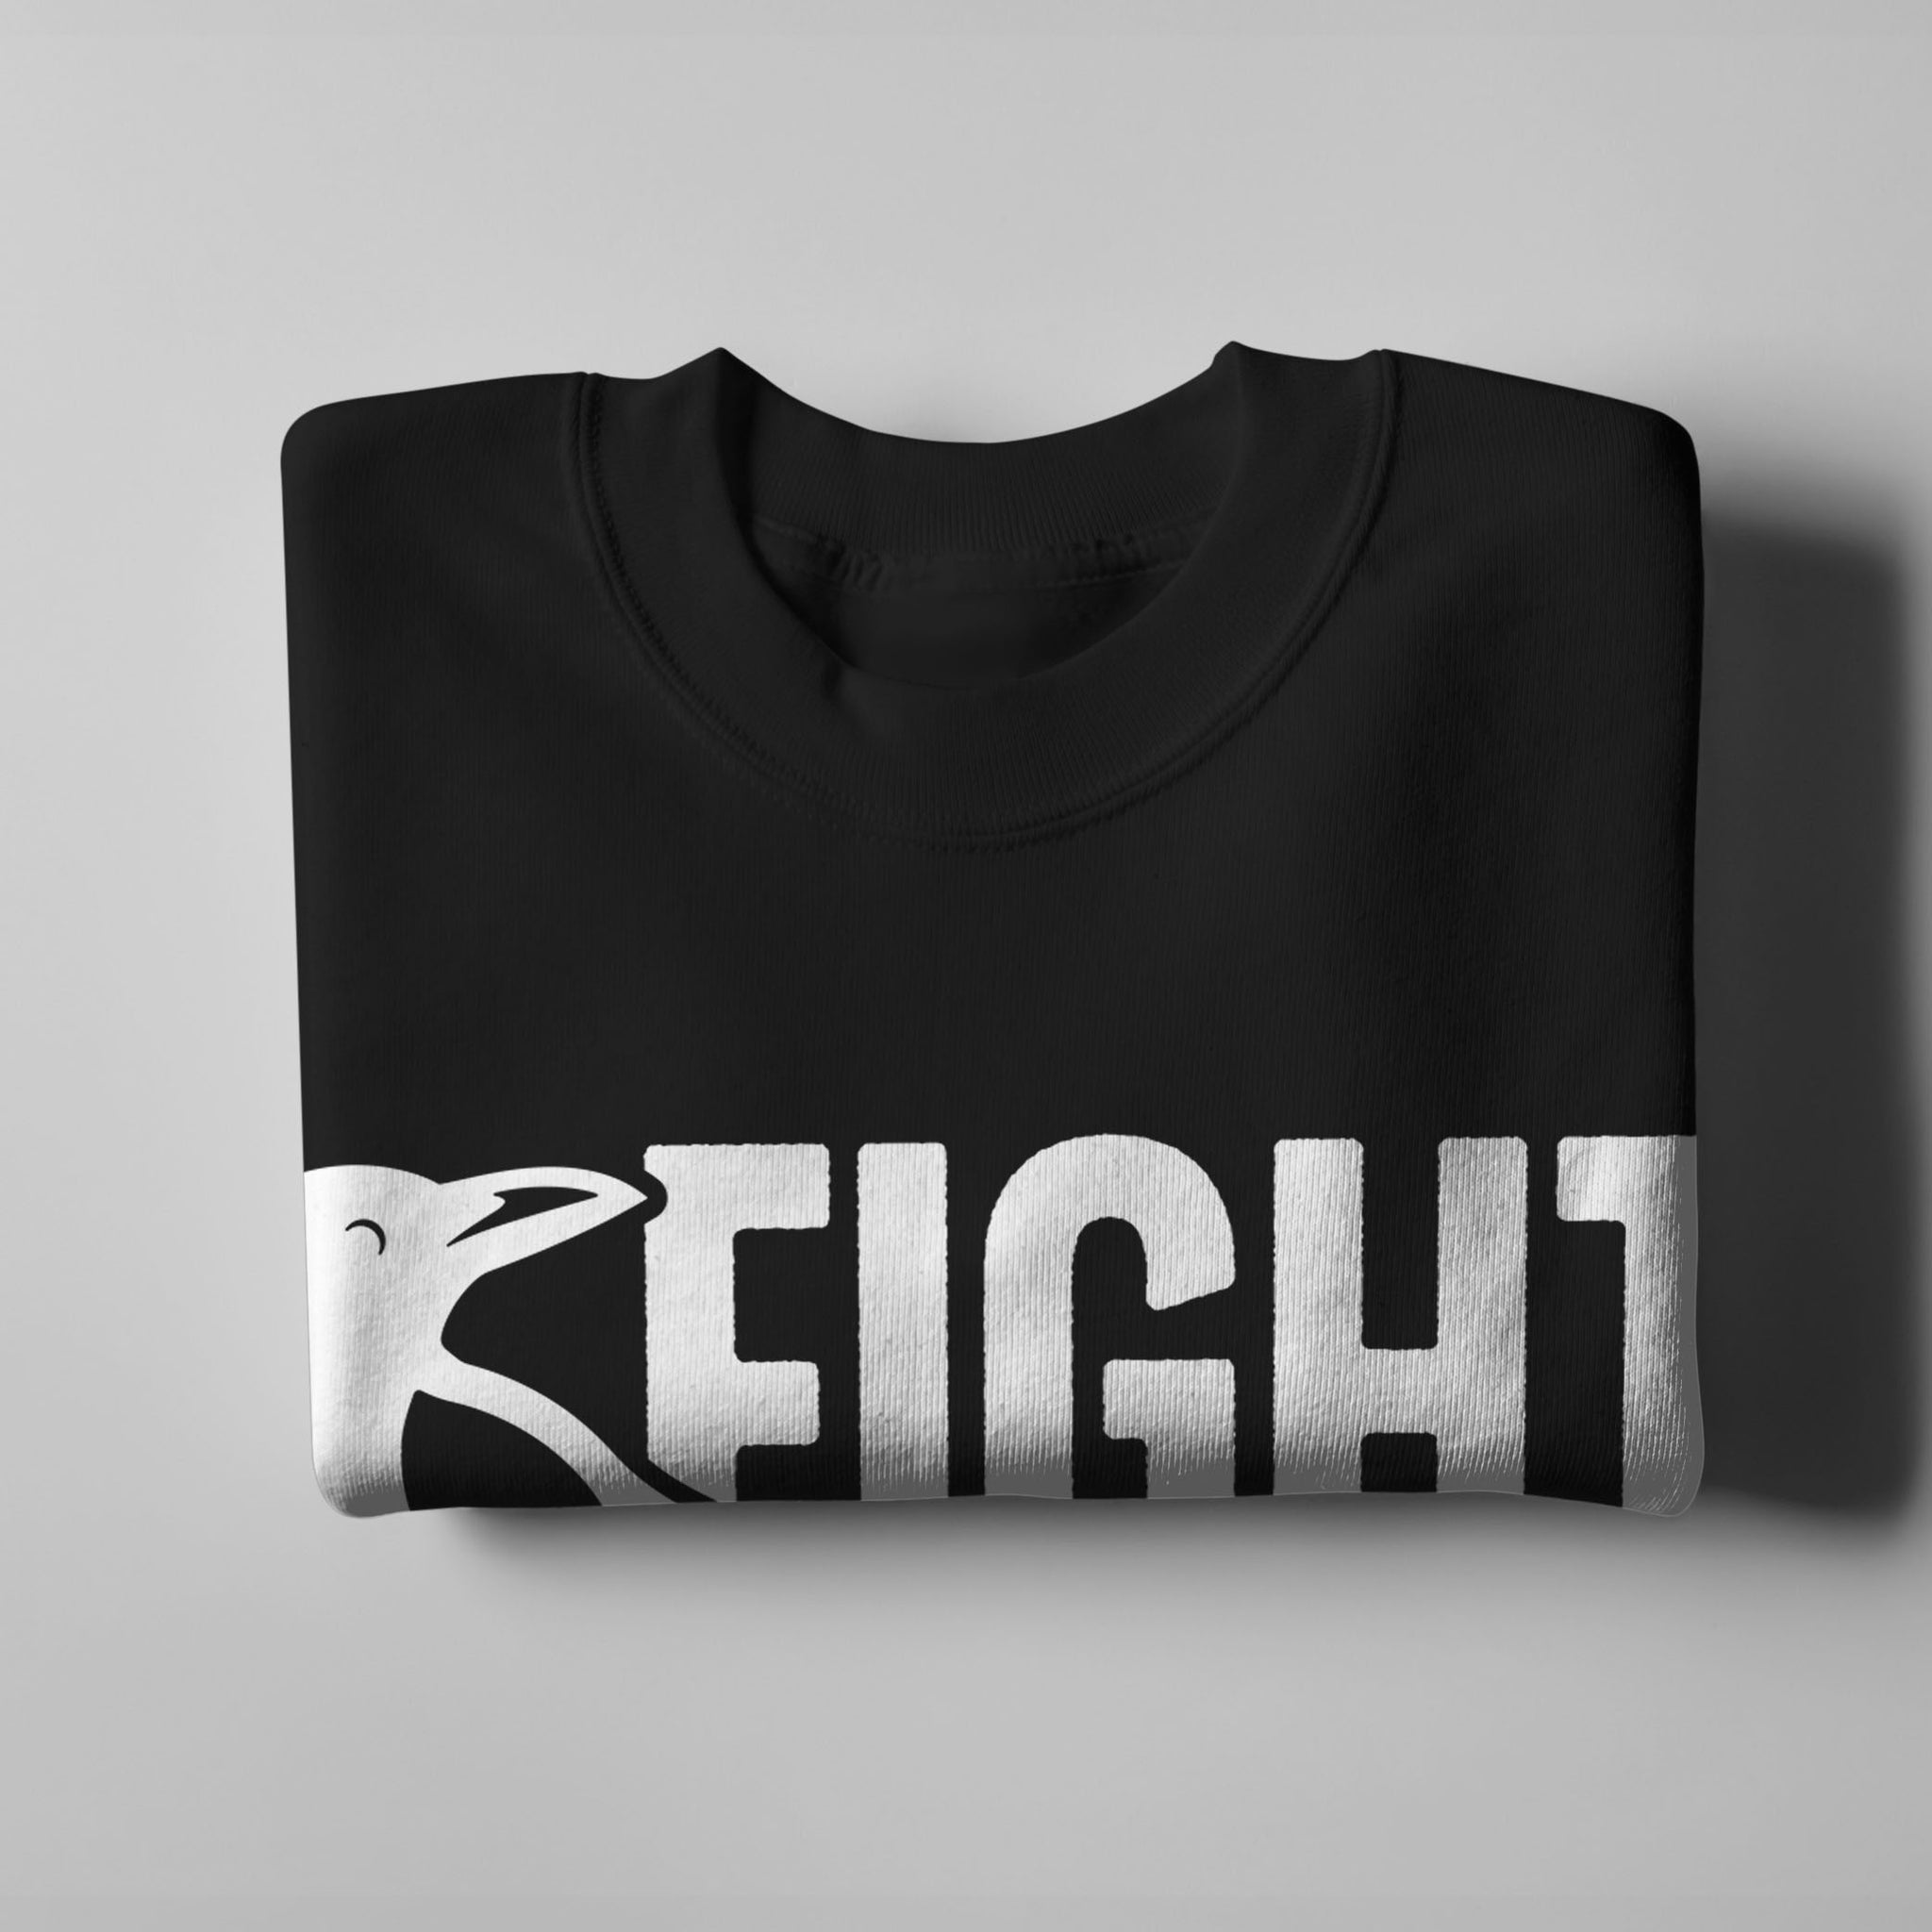 Fight Milk BBFB Sweatshirt - Black